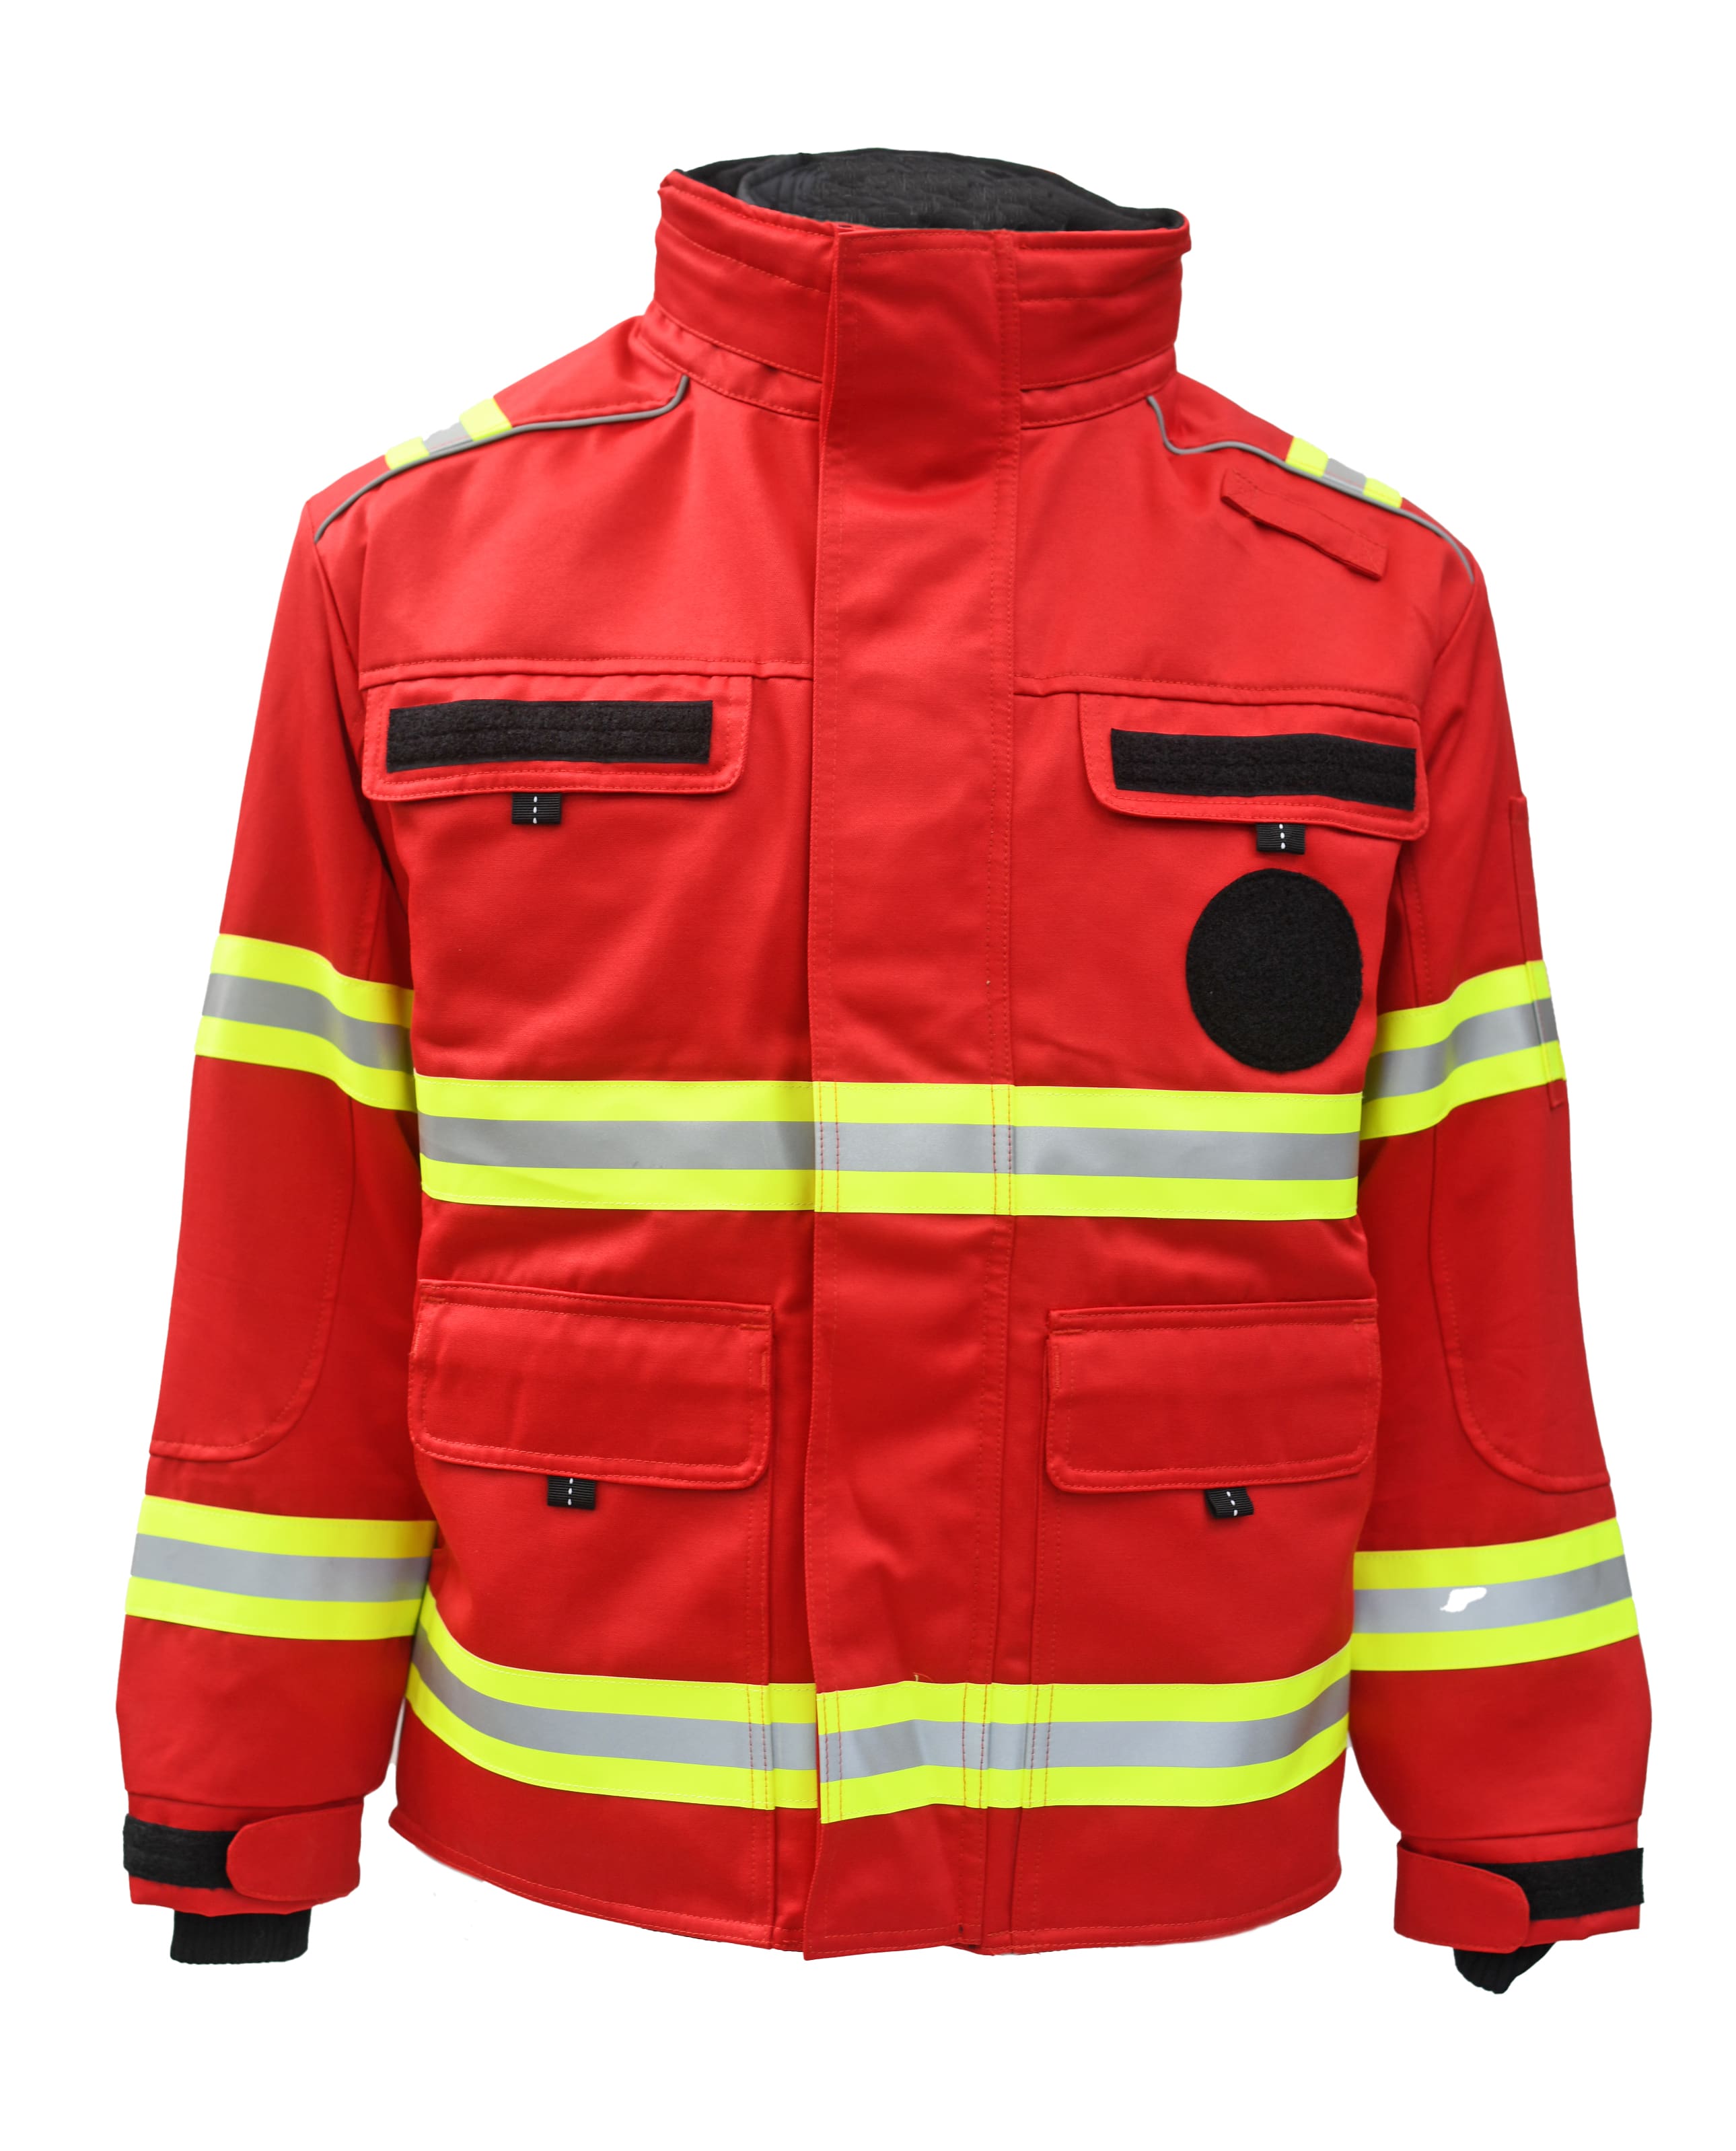 Rescuewear Midi-Parker 33857 Wasserrettung Rot